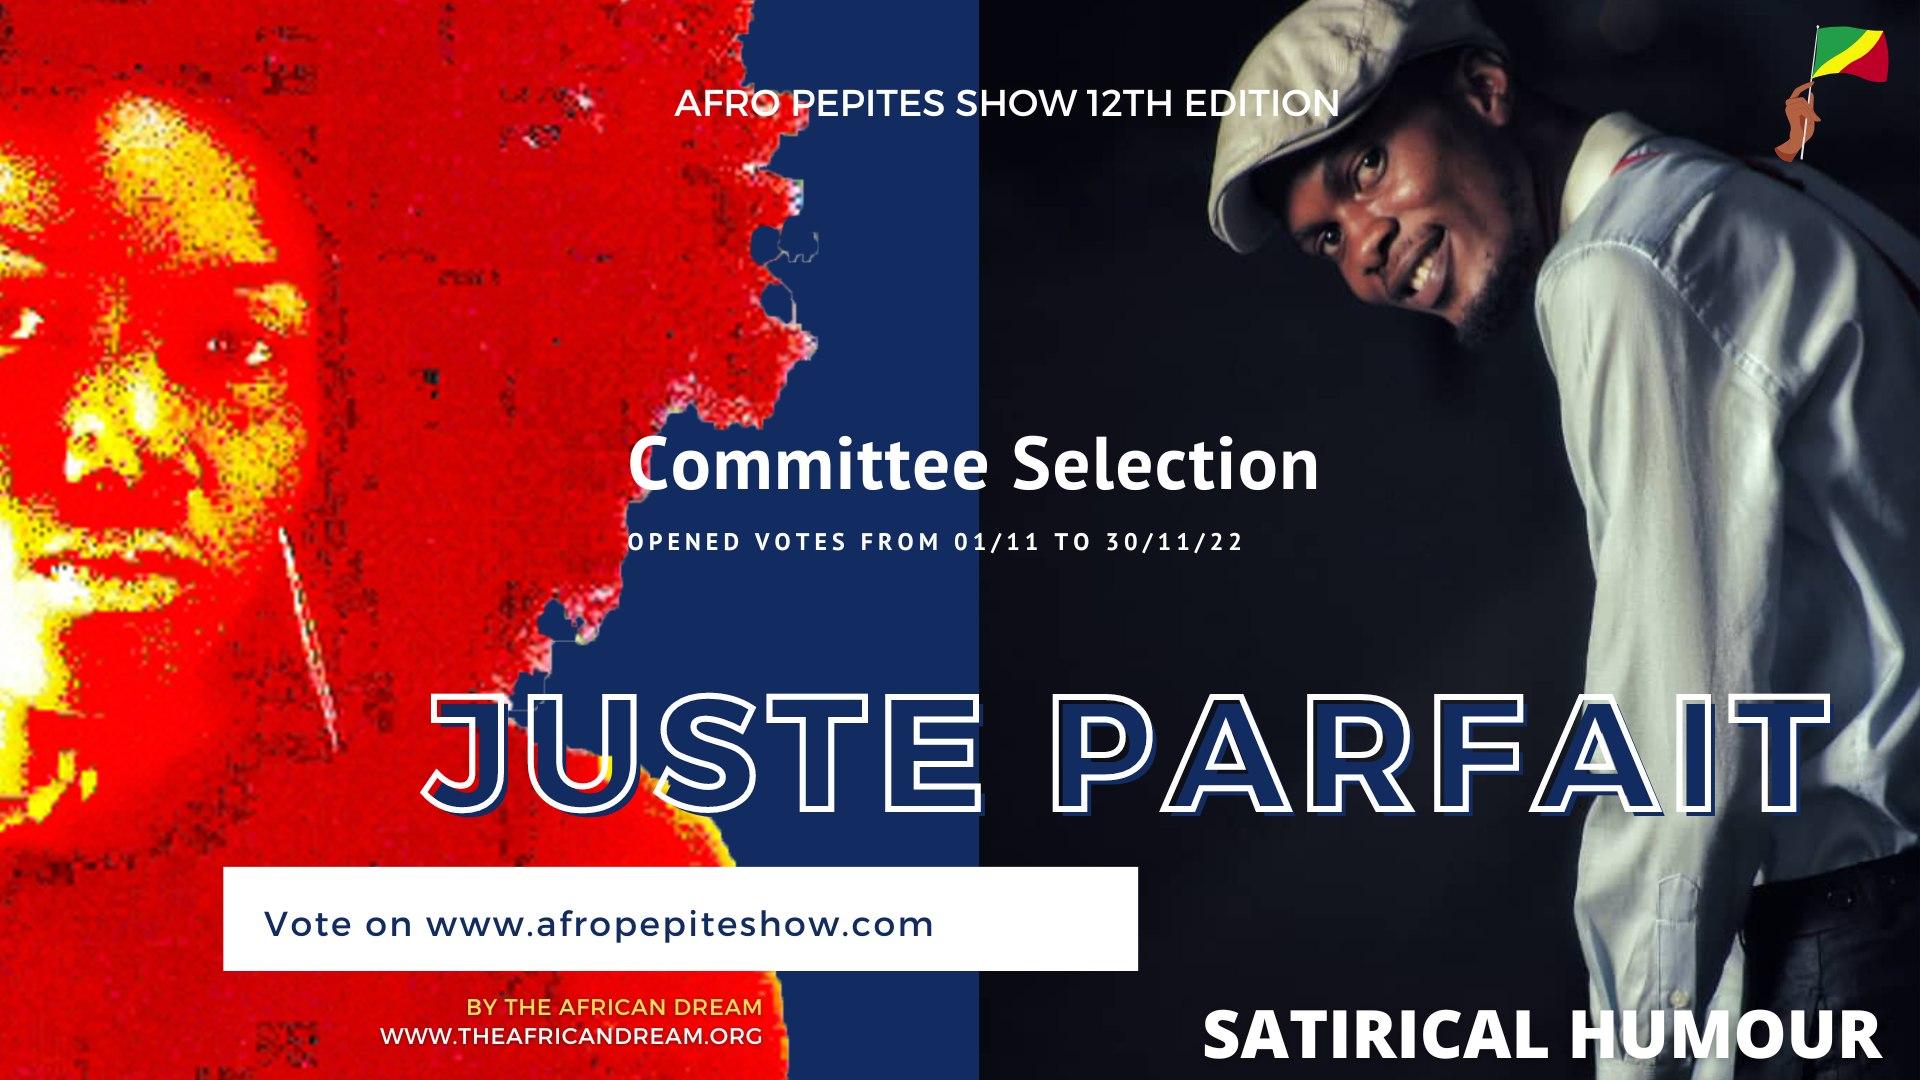 Afro pépites show 2022 : deux Congolais en finale